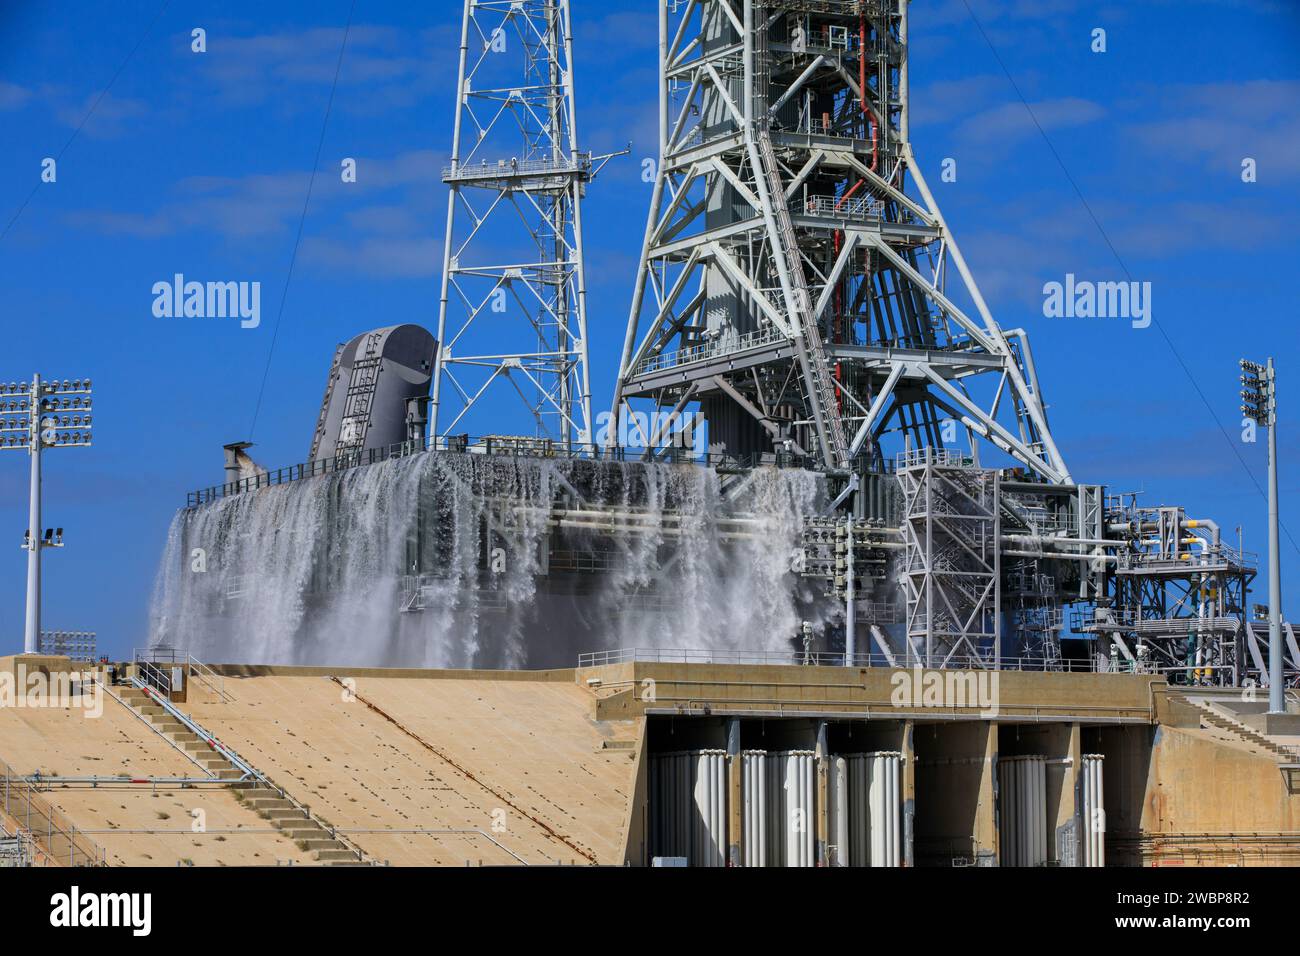 Die Exploration Ground Systems der NASA führt am 24. Oktober 2023 einen Wasserdurchflusstest mit dem mobilen Trägerraketen im Startup Complex 39B des Kennedy Space Centers in Florida durch. Es ist der dritte in einer Reihe von Tests, um zu überprüfen, ob der Überdruckschutz und die Schalldämmung bereit für den Start der Artemis II-Mission ist. Während des Liftoffs werden 400.000 Liter Wasser auf das Pad strömen, um die SLS-Rakete (Space Launch System) der NASA, das Orion-Raumschiff, den mobilen Trägerraketen und das Startrampe vor Überdruck und extremen Geräuschen zu schützen, die während der Zündung und des Liftoffs entstehen. Stockfoto